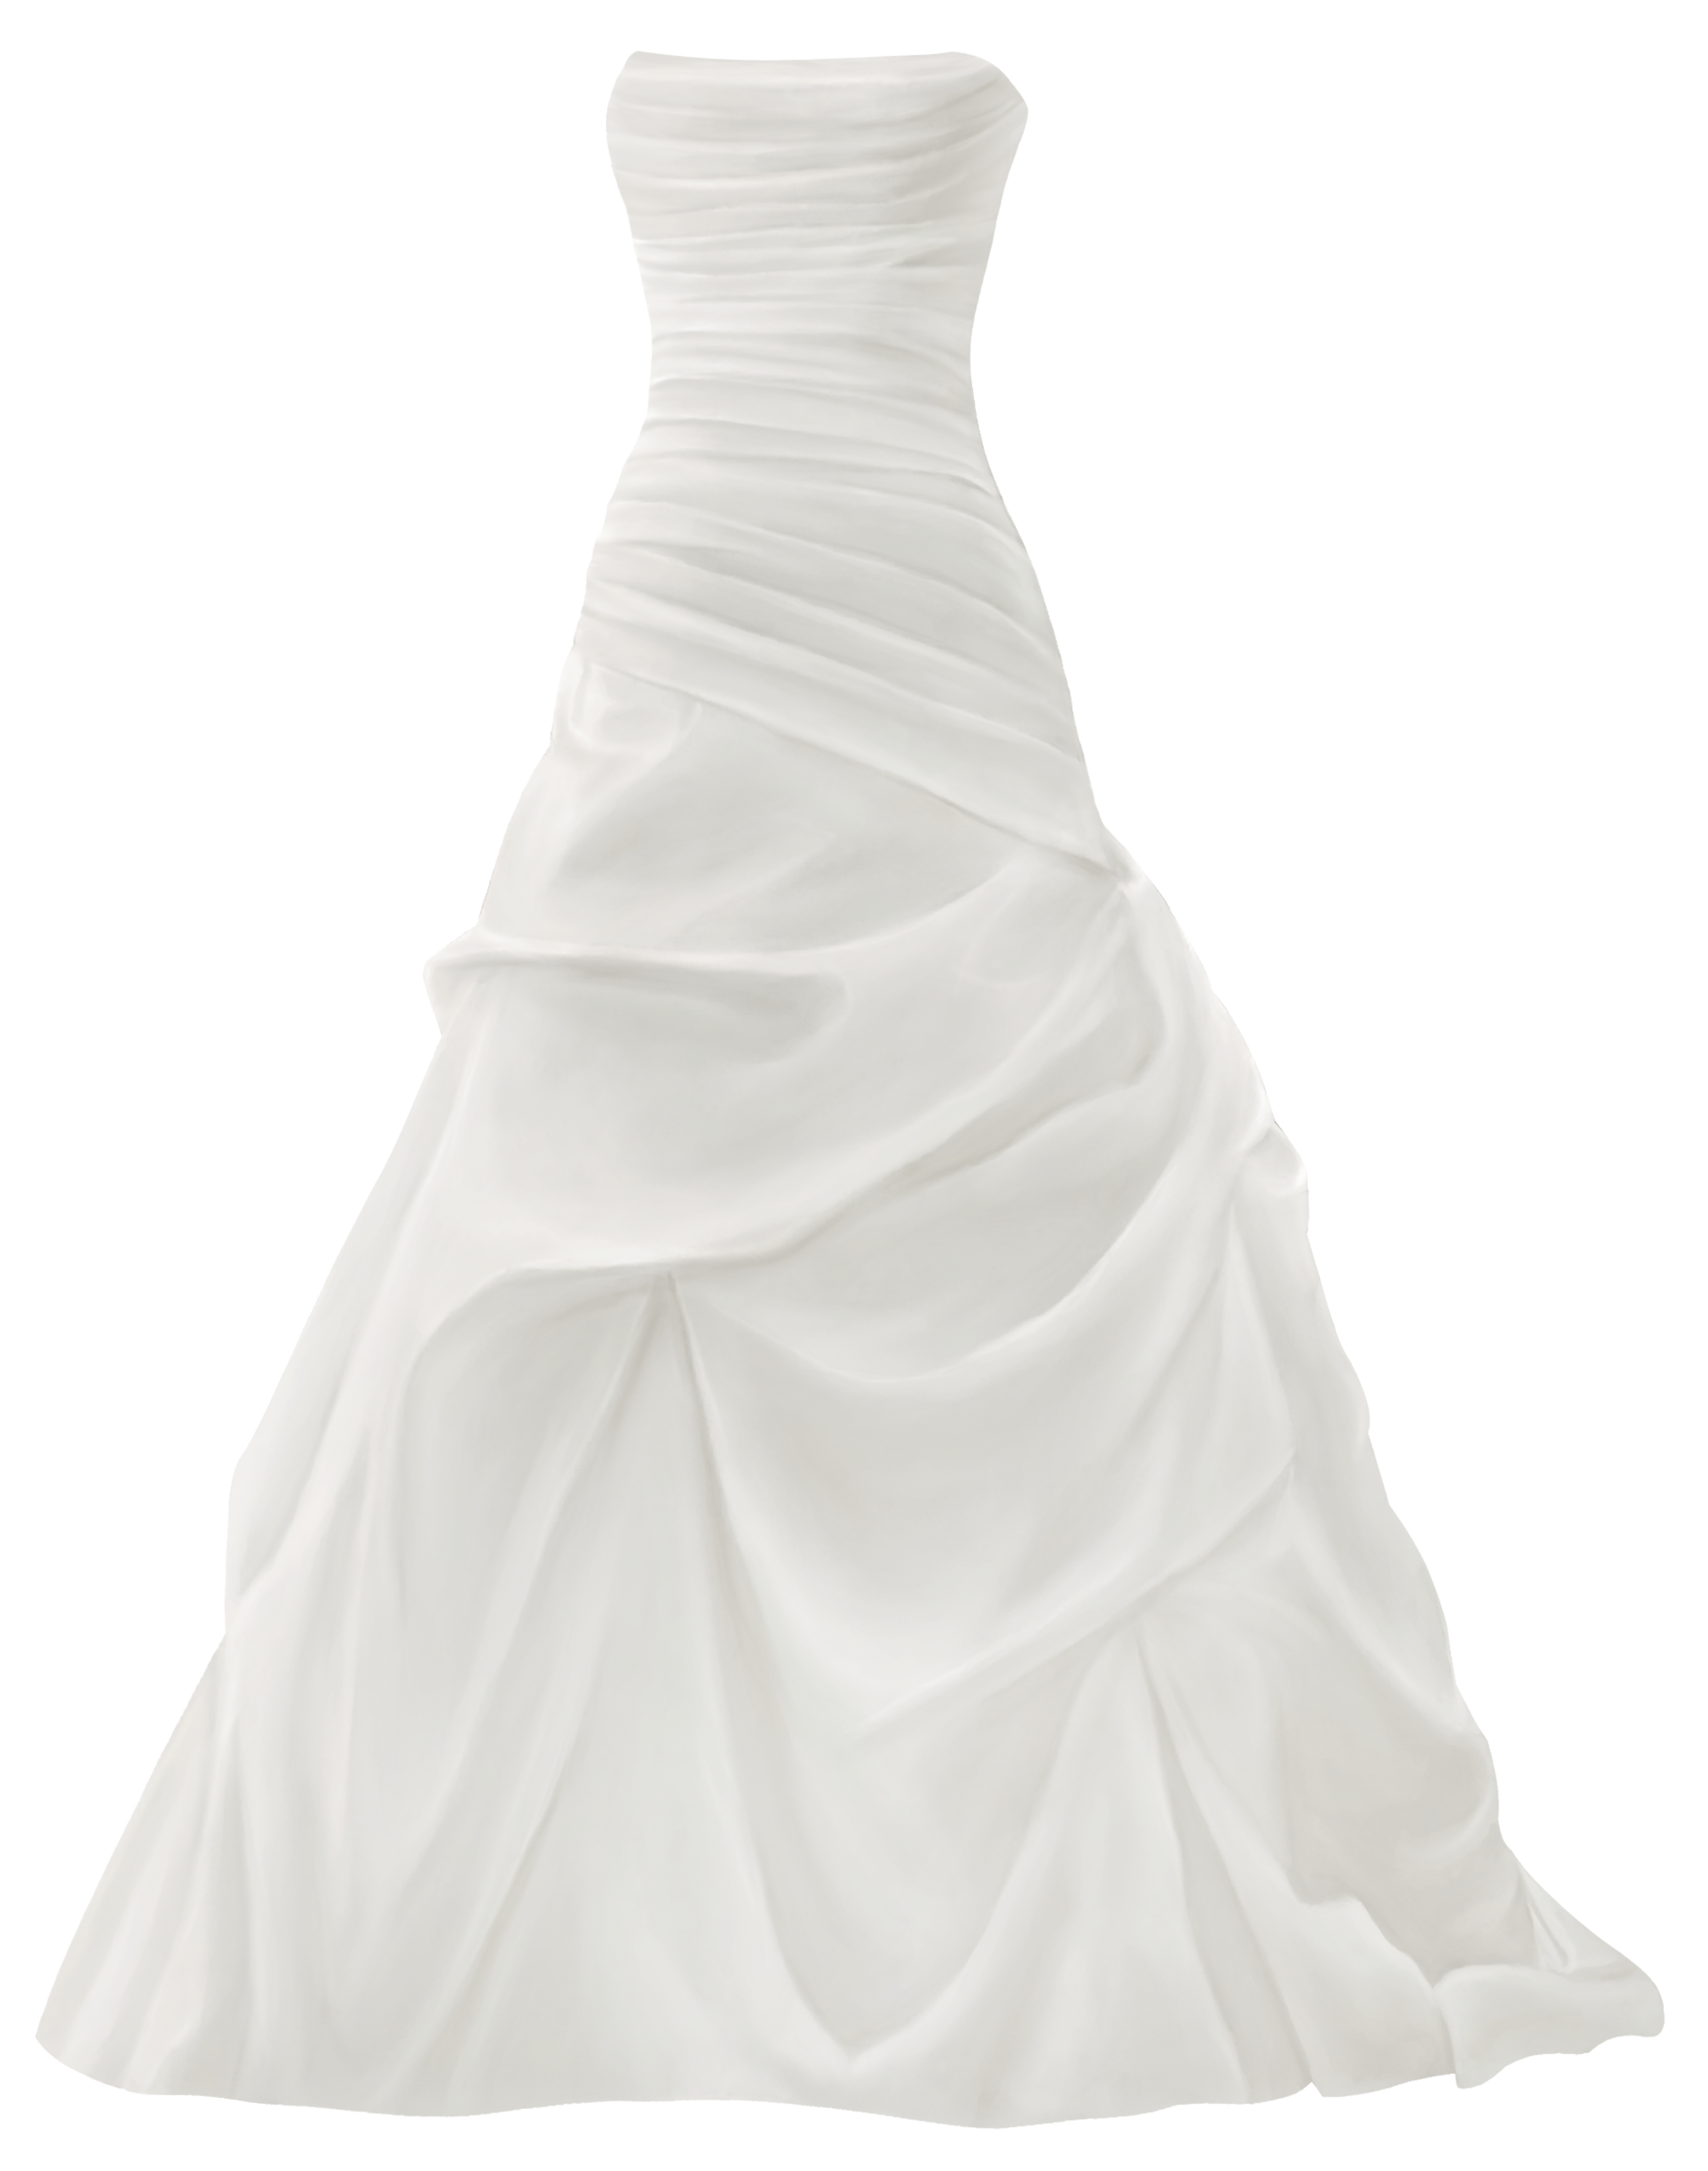 Gown Wedding Dress PNG Clip Art.